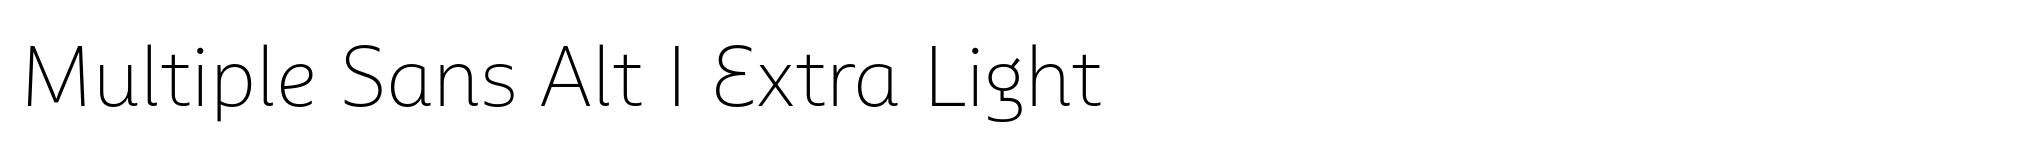 Multiple Sans Alt I Extra Light image